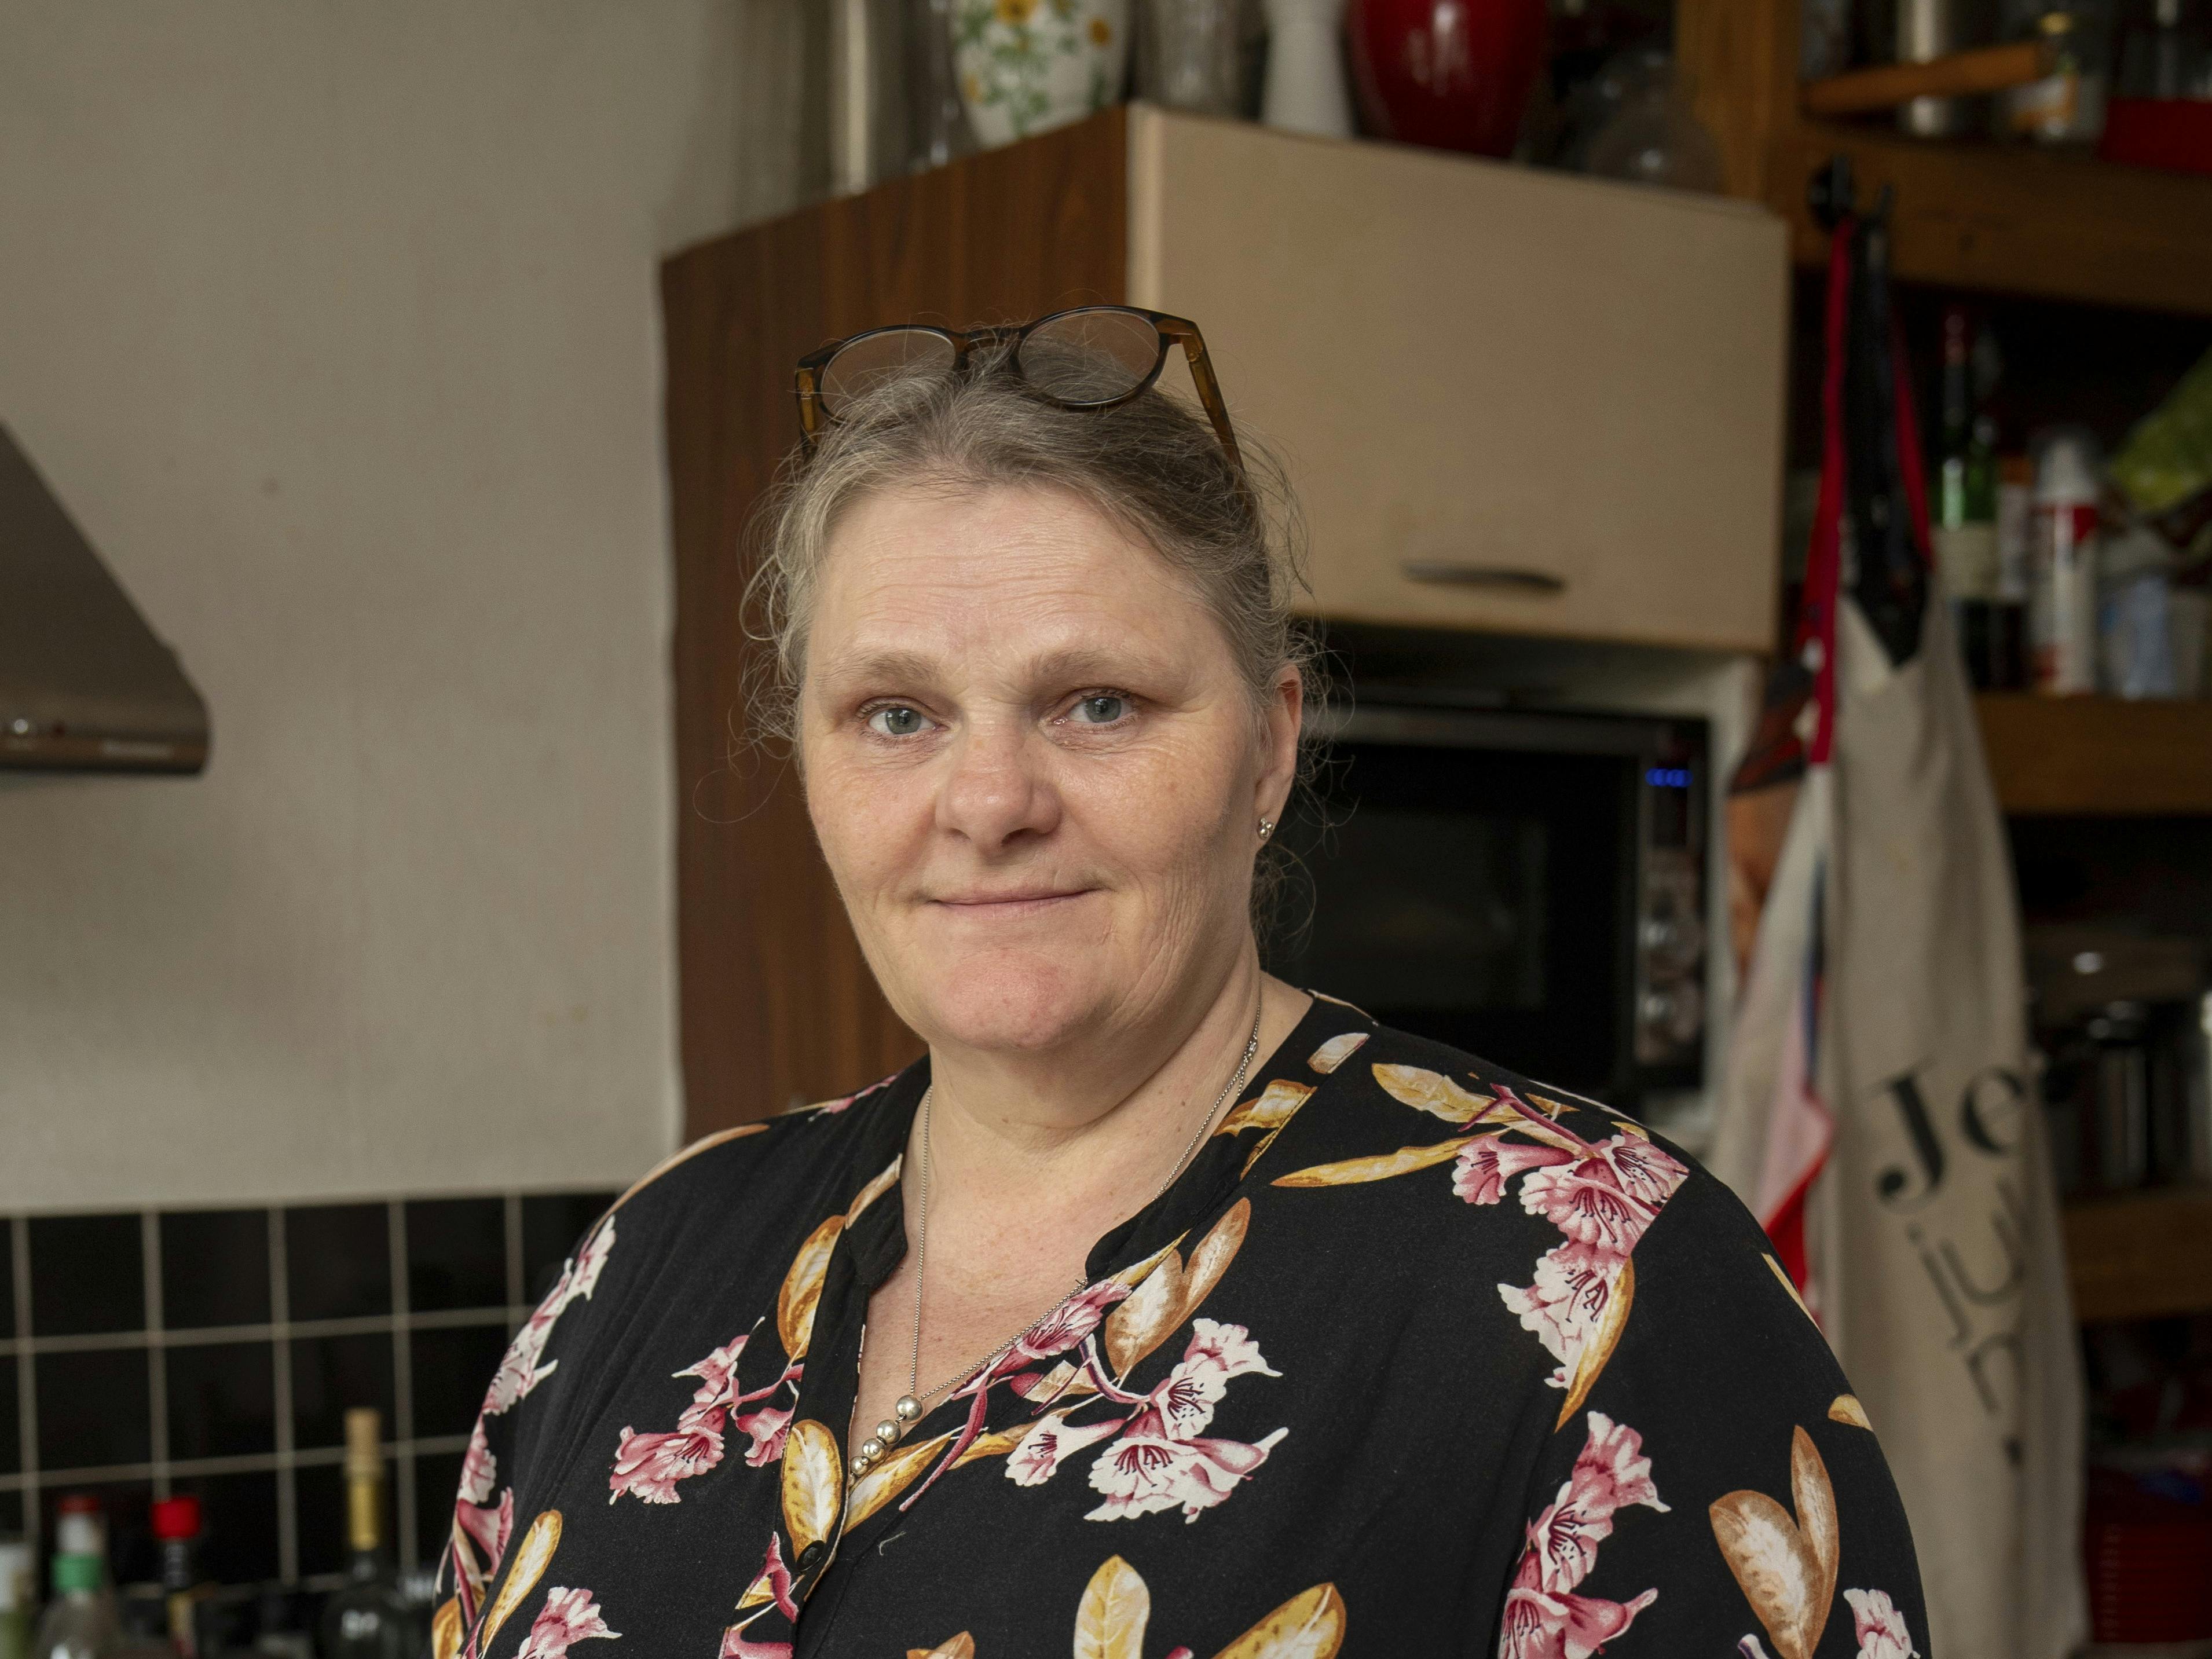 Annette Thomsen i sit køkken. Hun har fulgt Diabetes Kuren og har fået styr på begyndende diabetes.